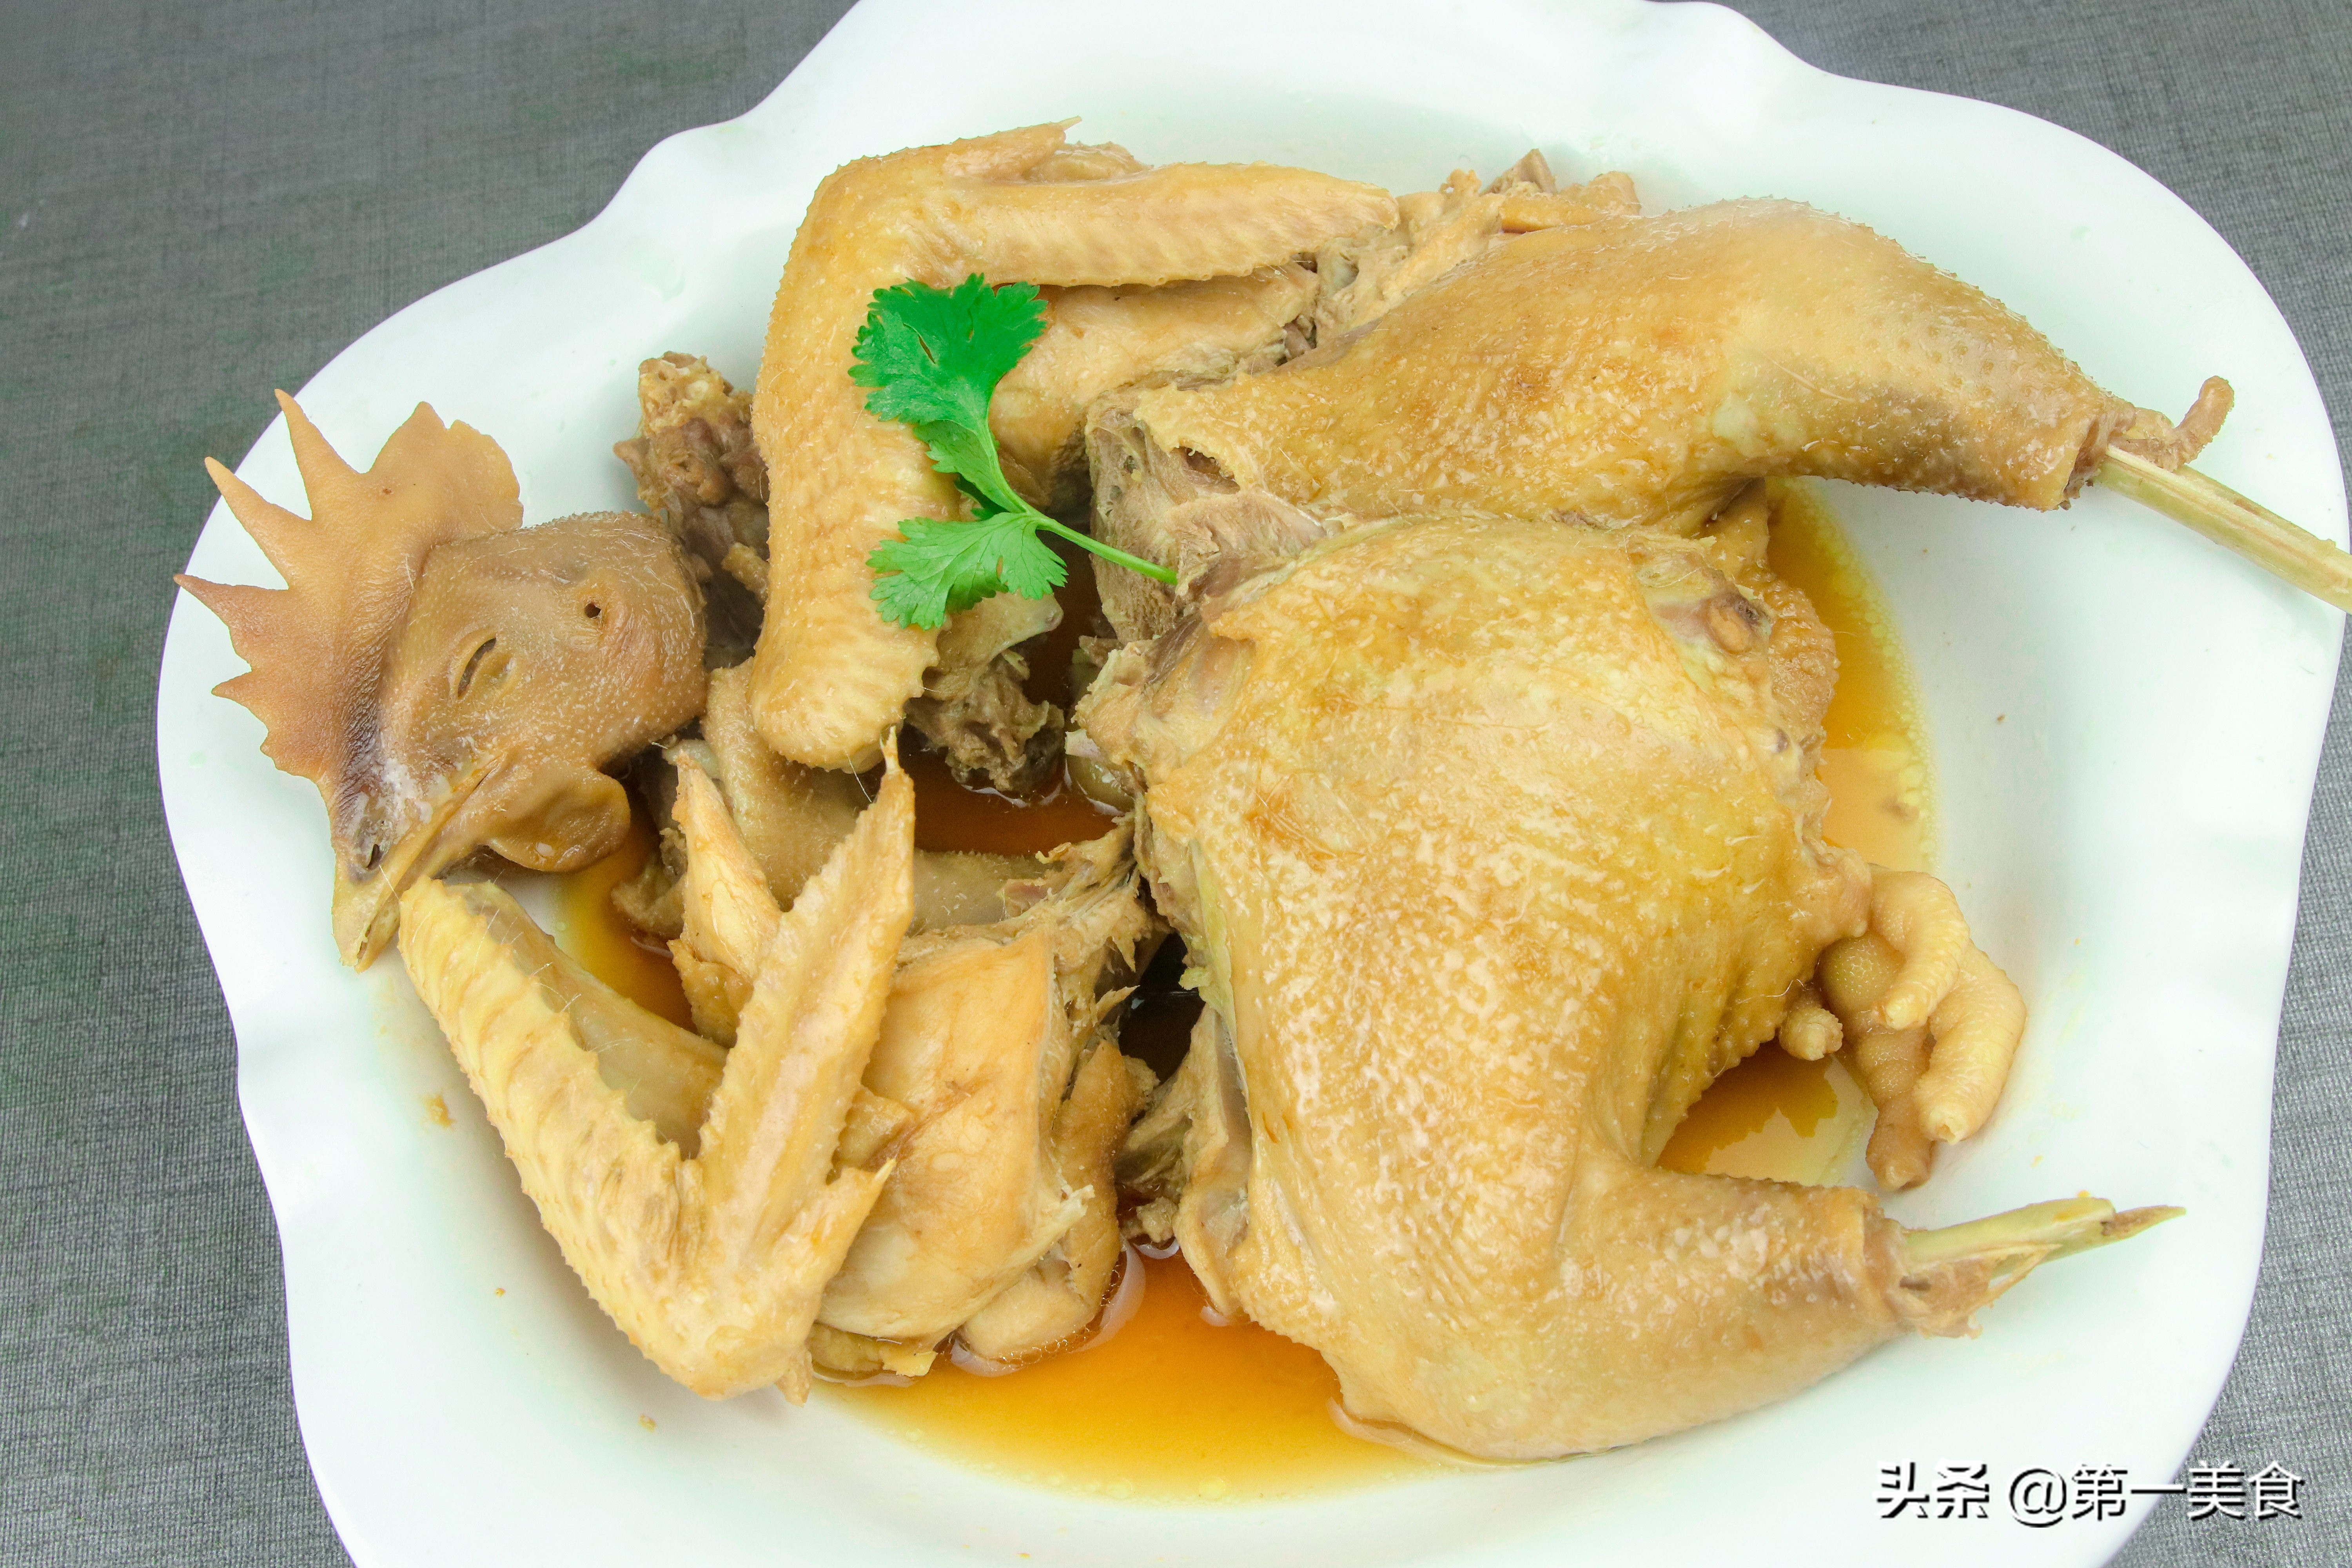 厨师长分享家常清蒸鸡做法 鸡肉爽滑细腻无腥味